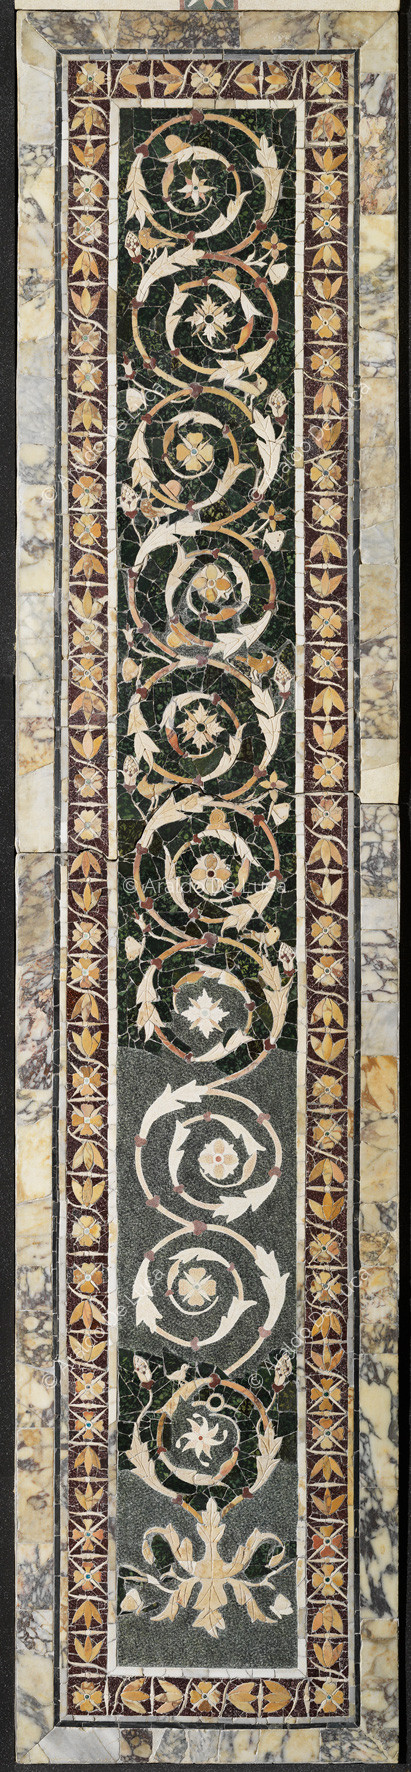 Pilastra con la rama floral y borde de flores de loto - Opus Sectile de Porta Marina, particular